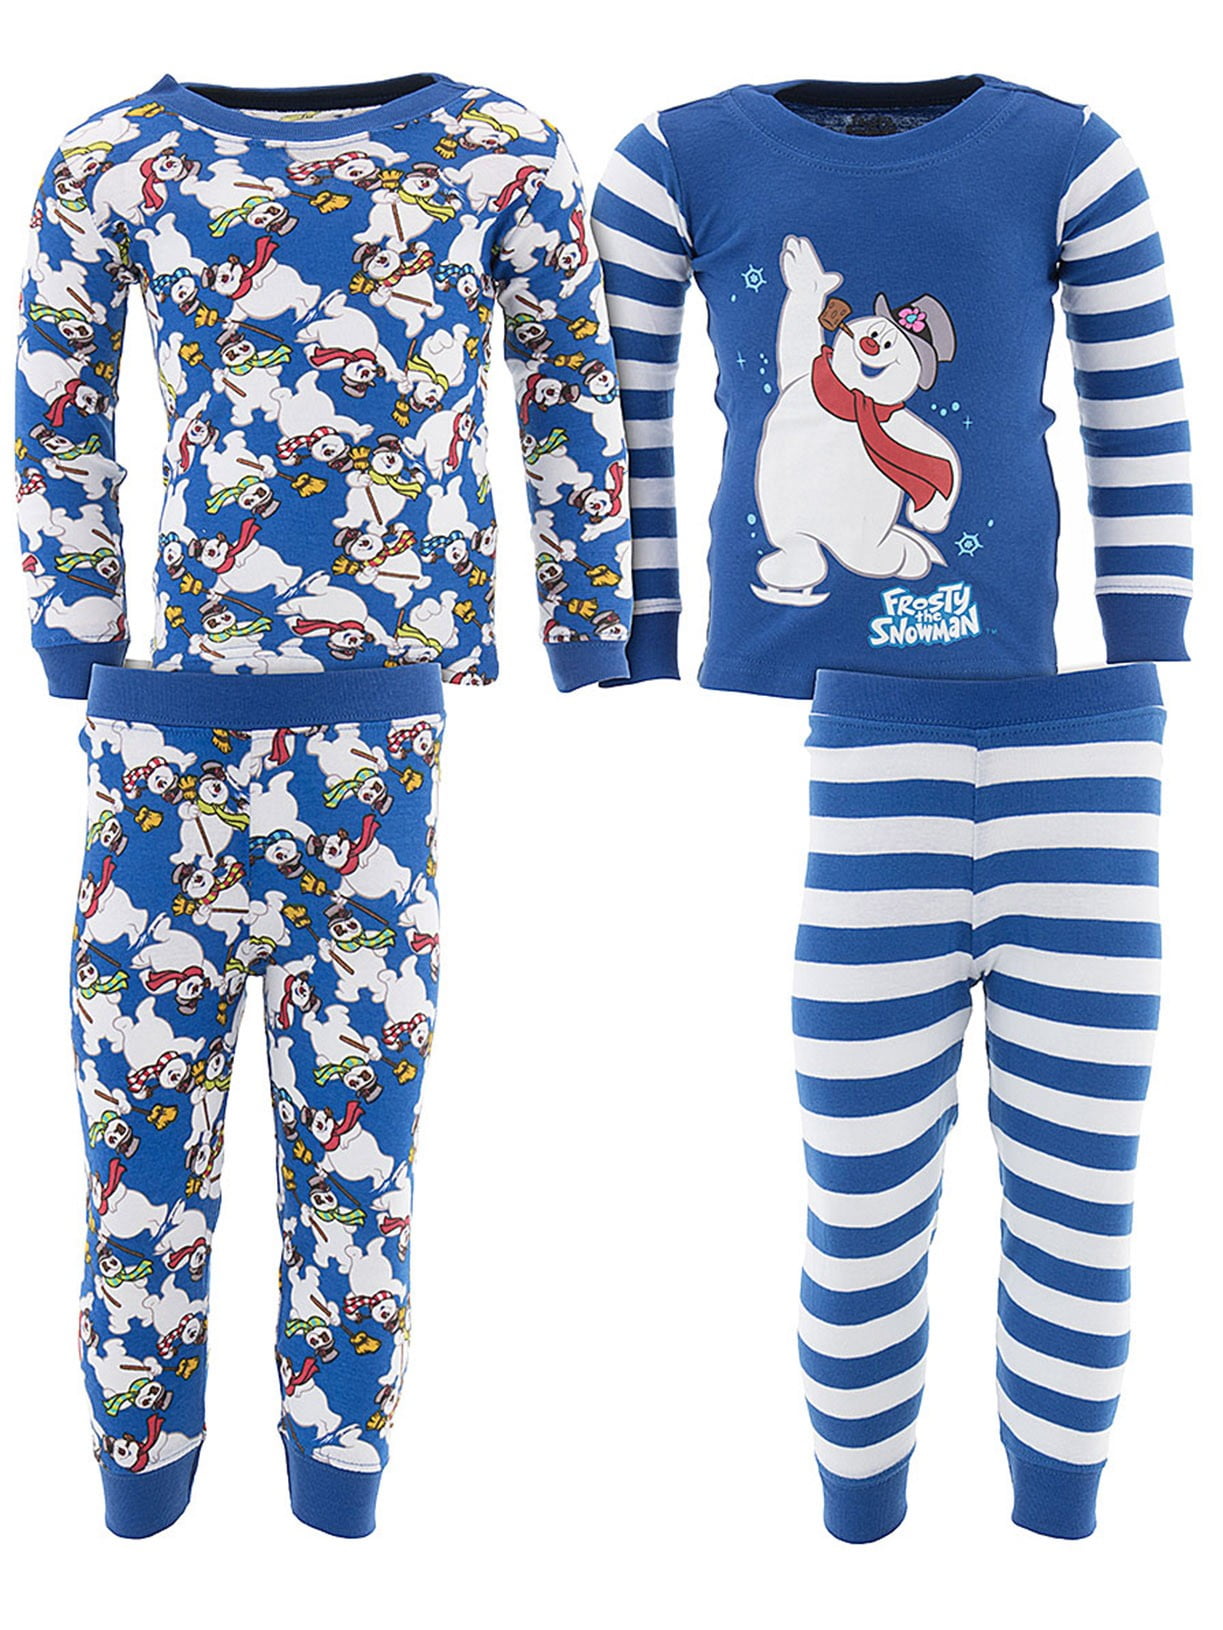 Intimo Kids Frosty The Snowman 4 Piece Pajama Set - Walmart.com